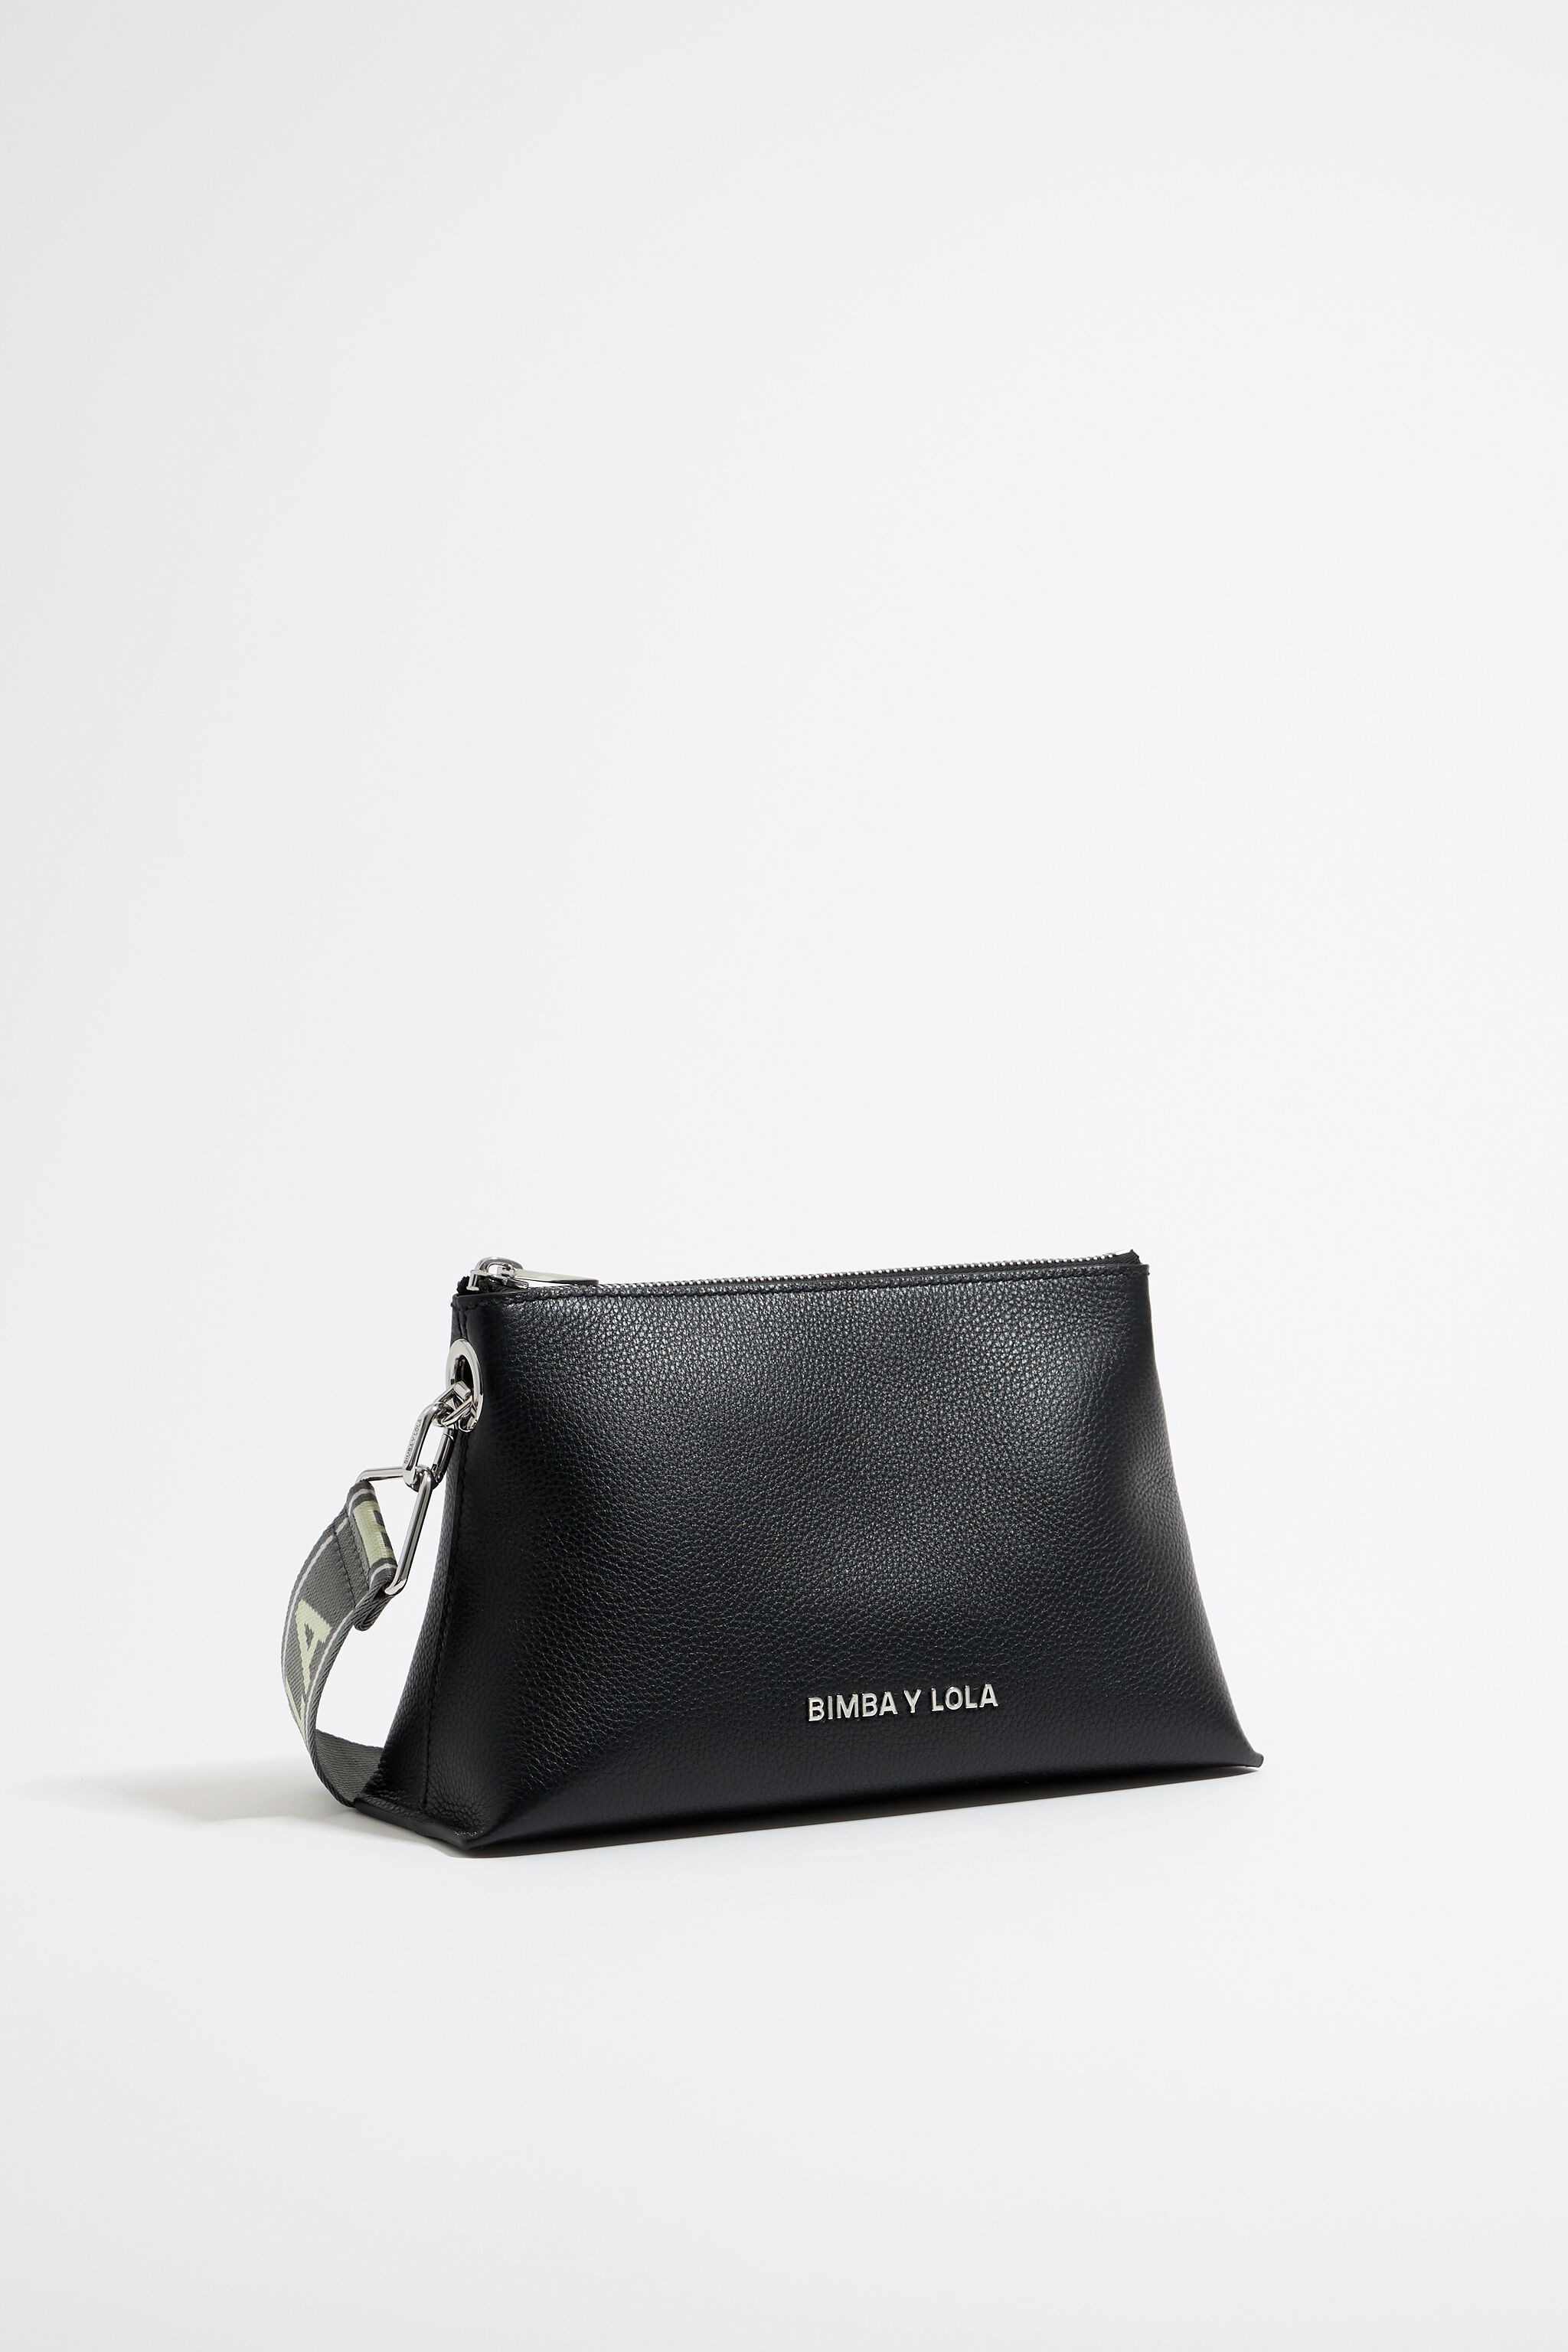 Small black leather trapezium bag